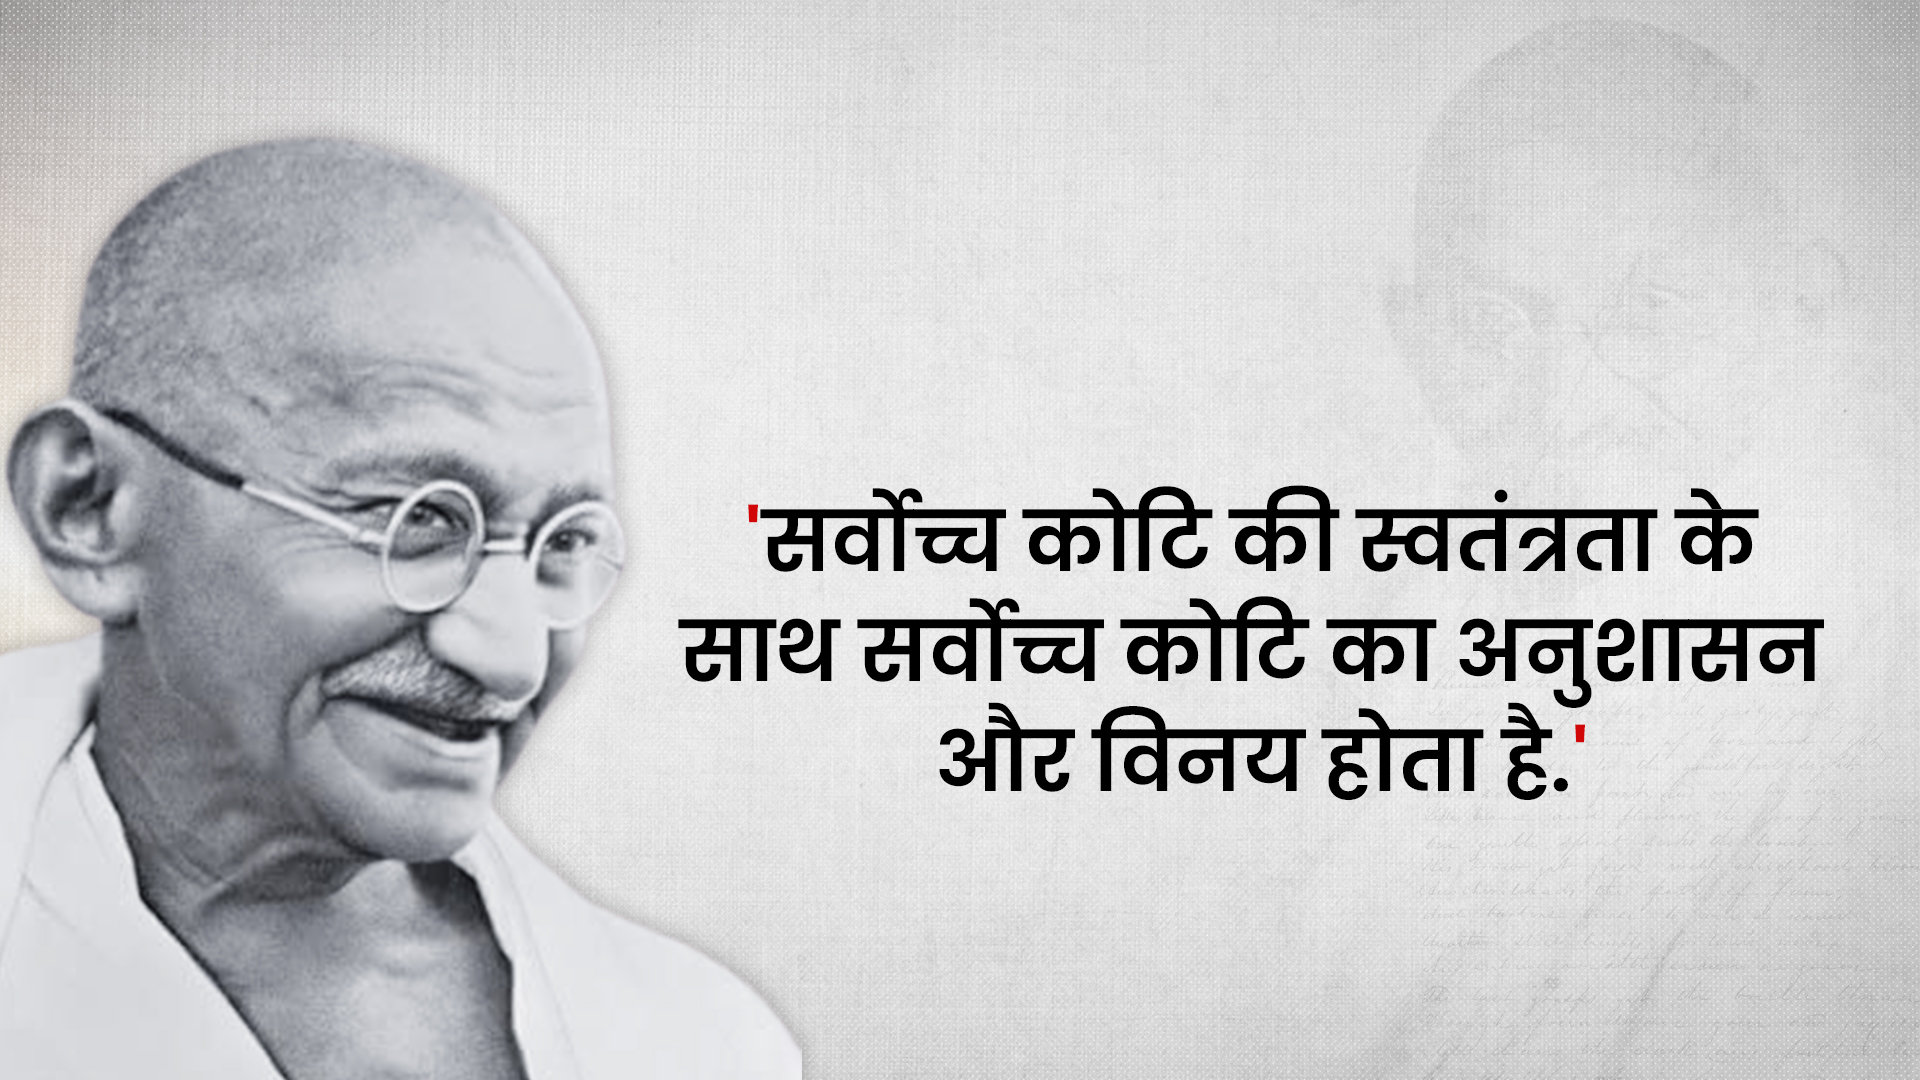 महात्मा गांधी का संदेश